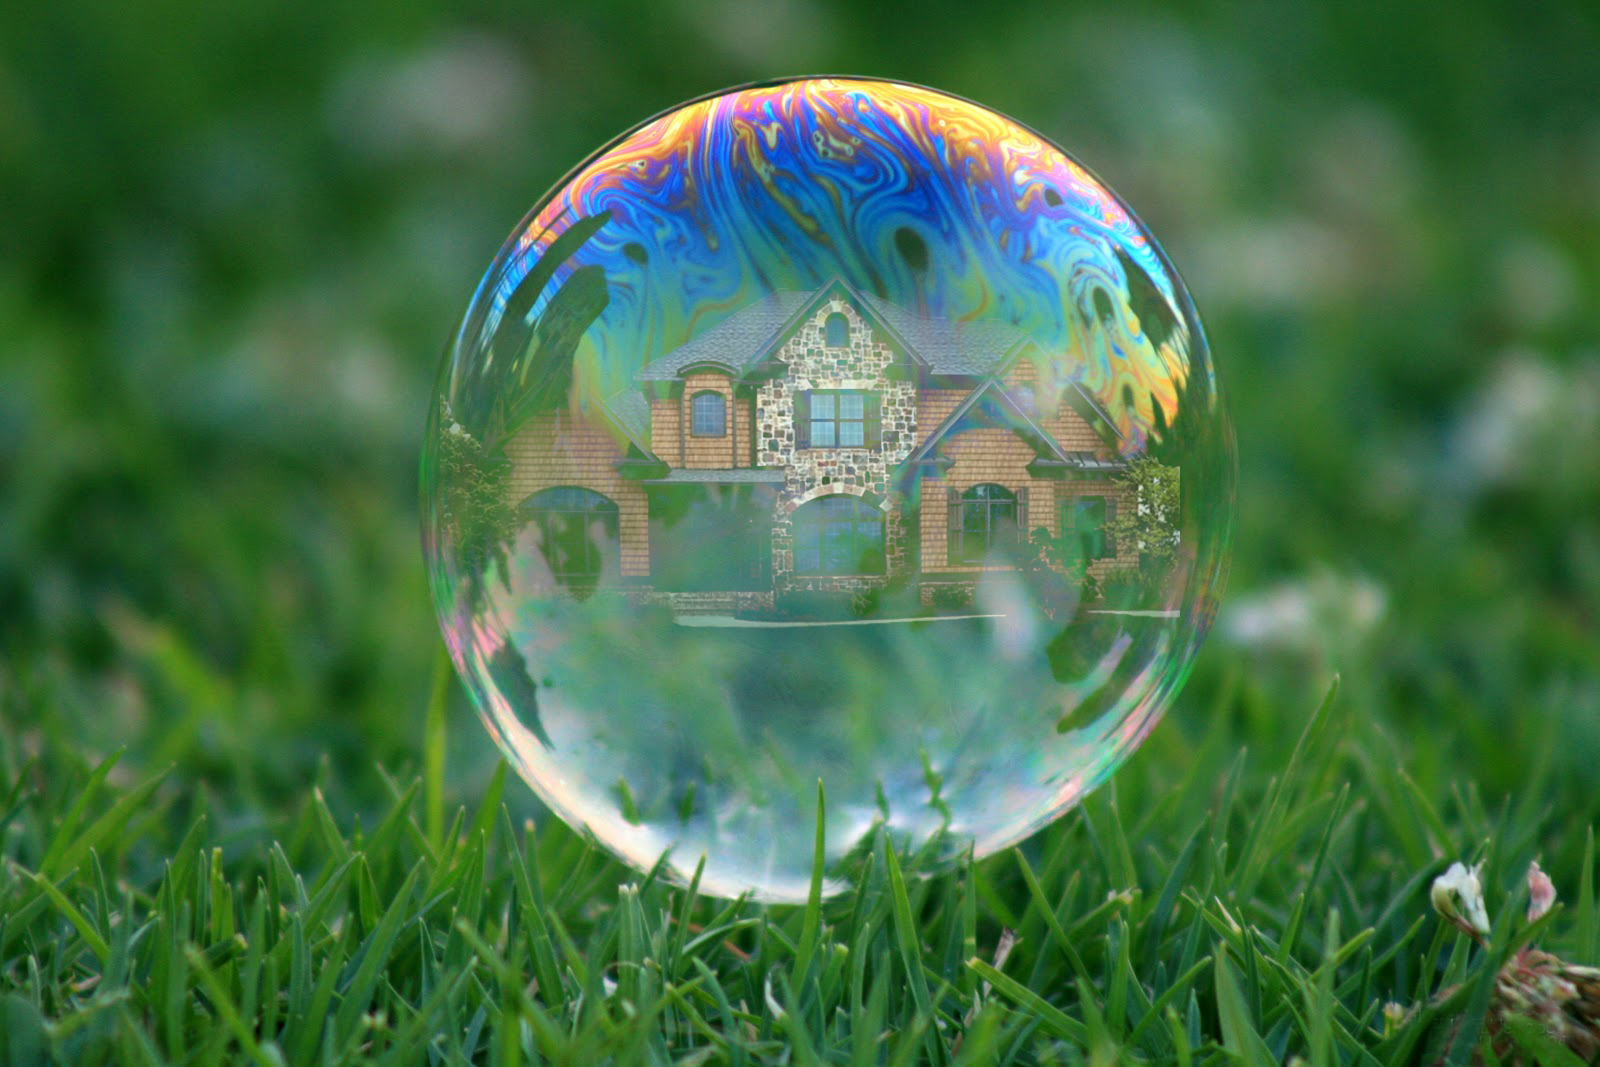 http://www.texaslending.com/wp-content/uploads/2013/07/Housing-Bubble.jpg